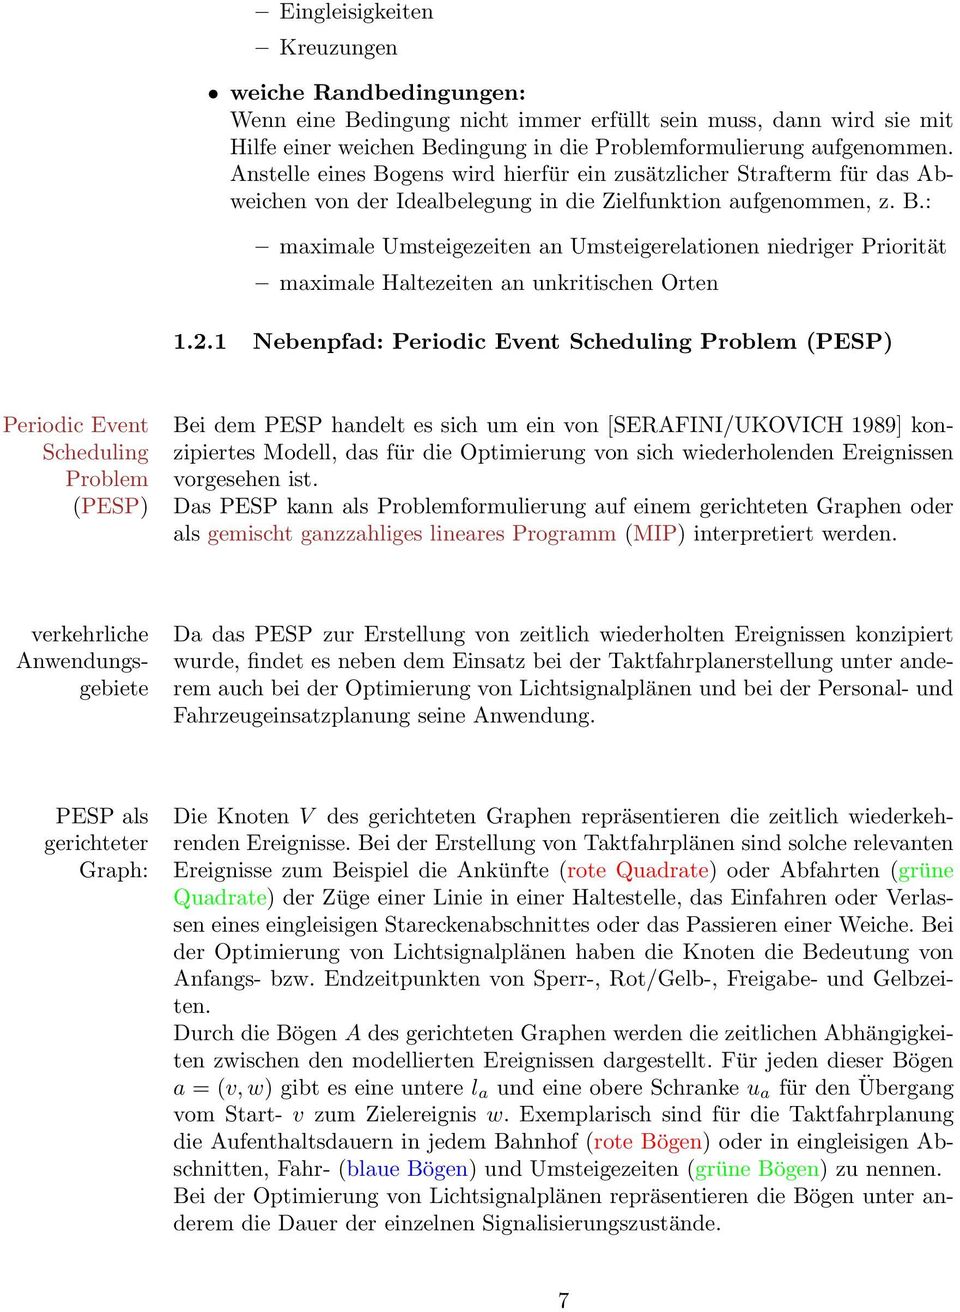 2.1 Nebenpfad: Periodic Event Scheduling Problem (PESP) Periodic Event Scheduling Problem (PESP) Bei dem PESP handelt es sich um ein von [SERAFINI/UKOVICH 1989] konzipiertes Modell, das für die